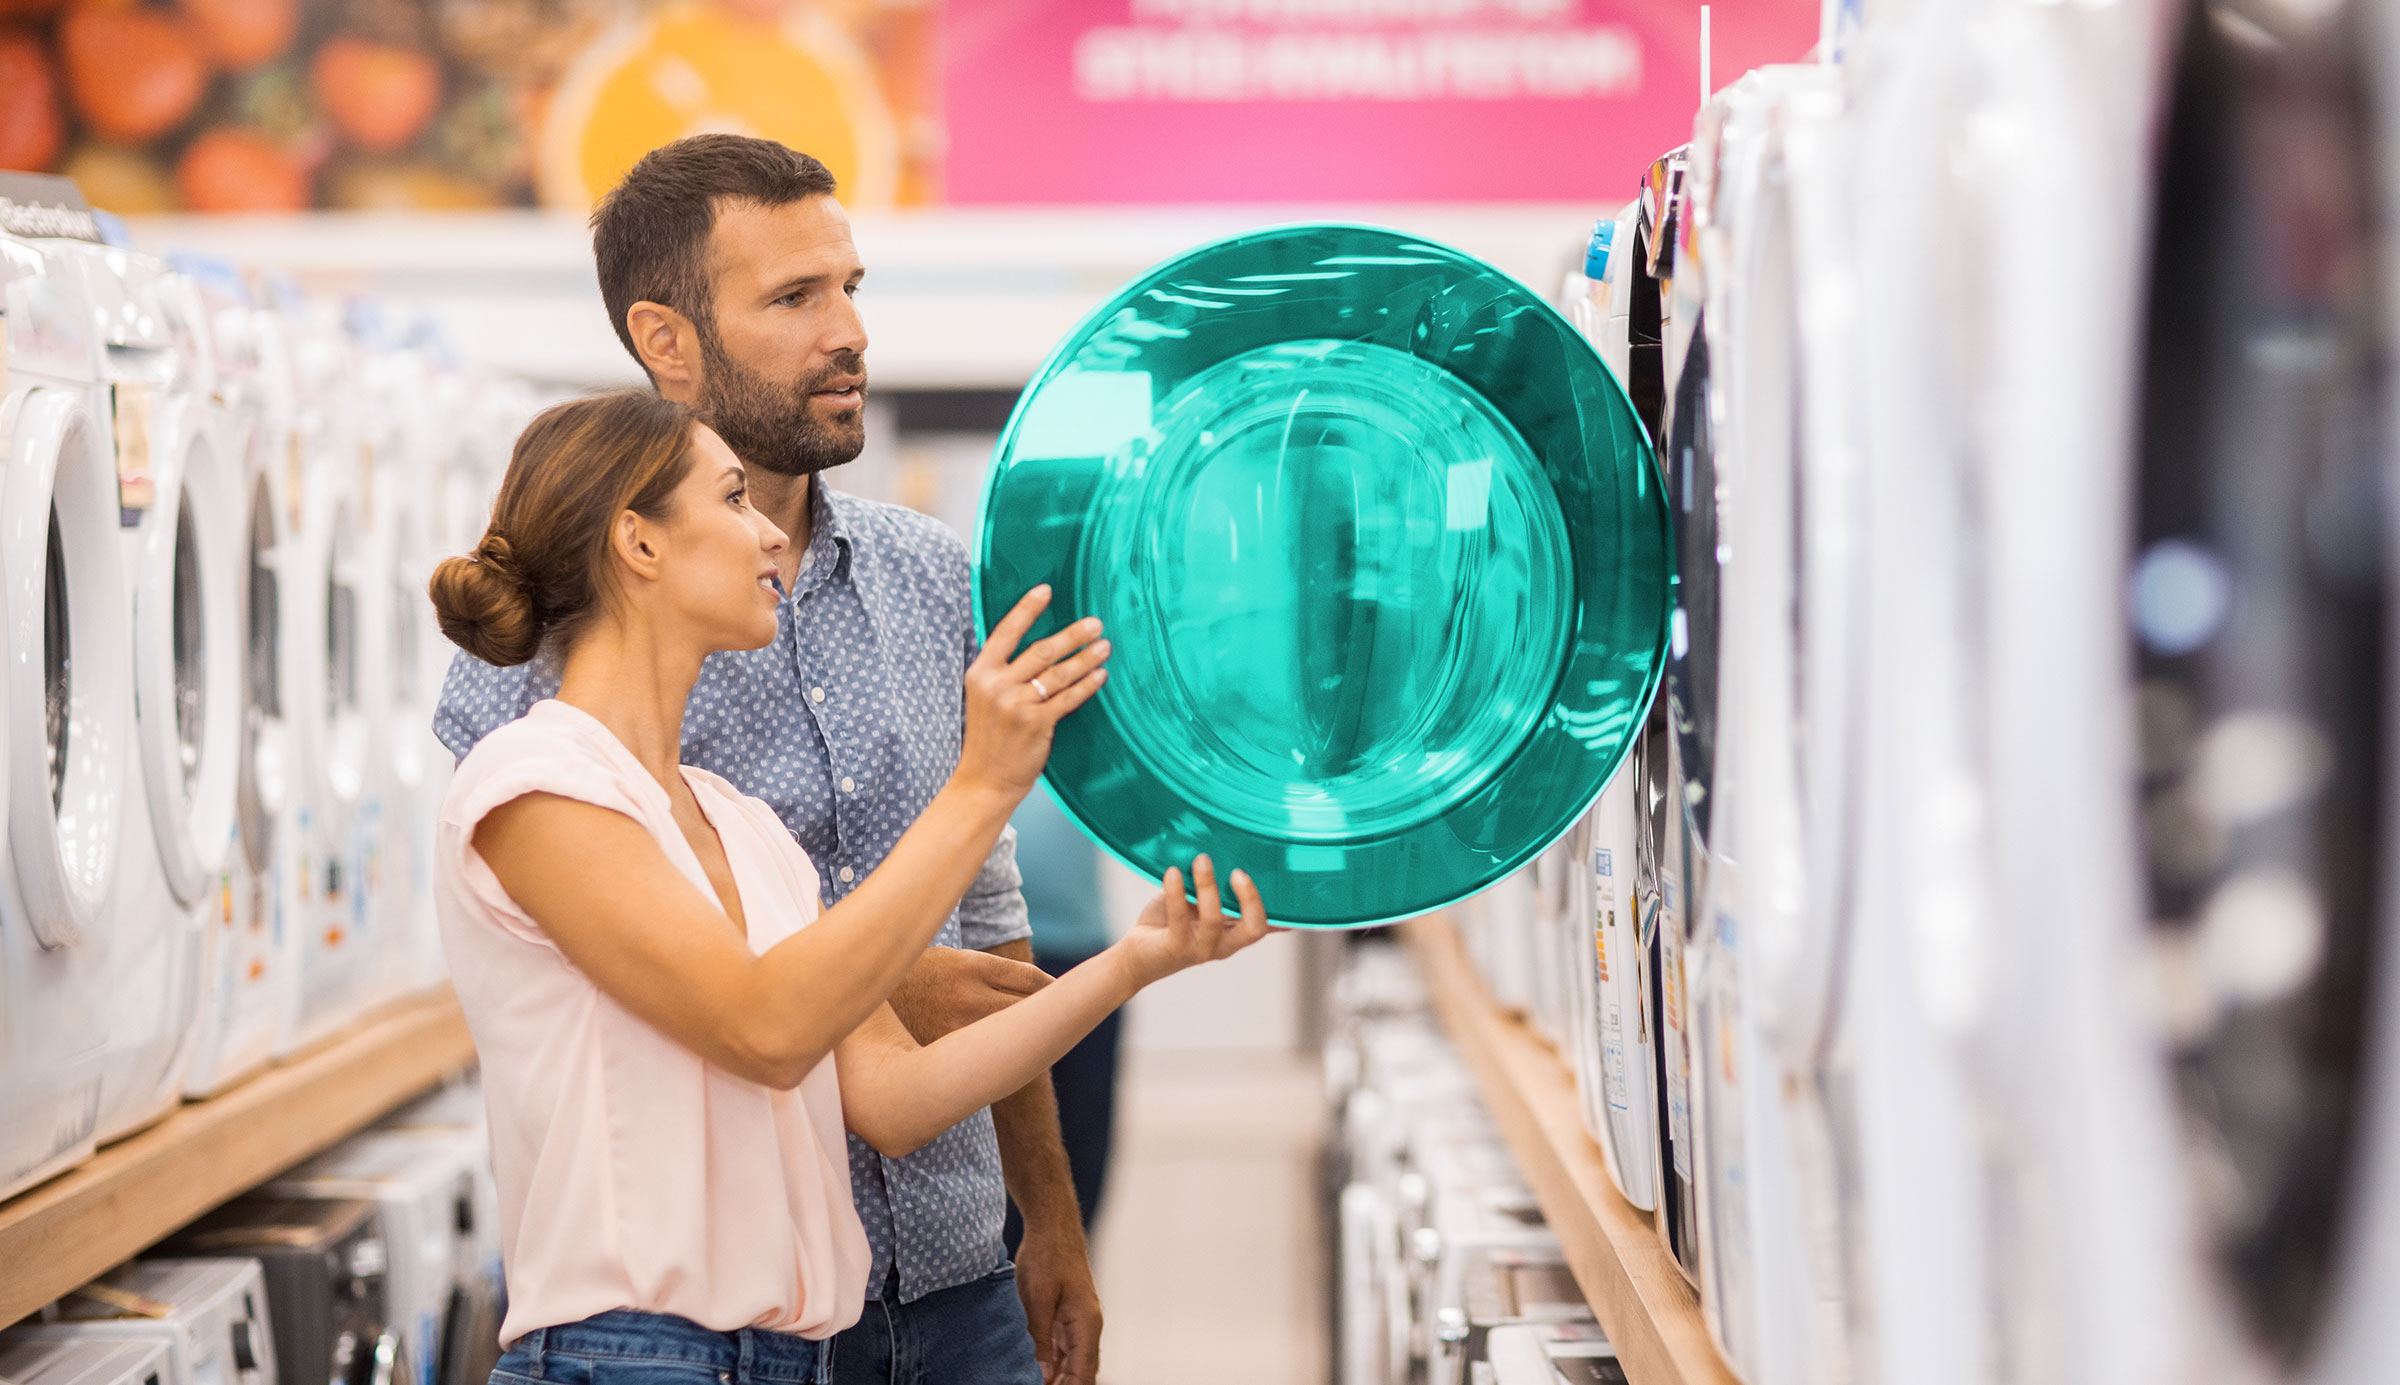 Un couple se tient dans un magasin, entouré d'appareils électroménagers. Ils regardent tous deux à l'intérieur d'une machine à laver ouverte.